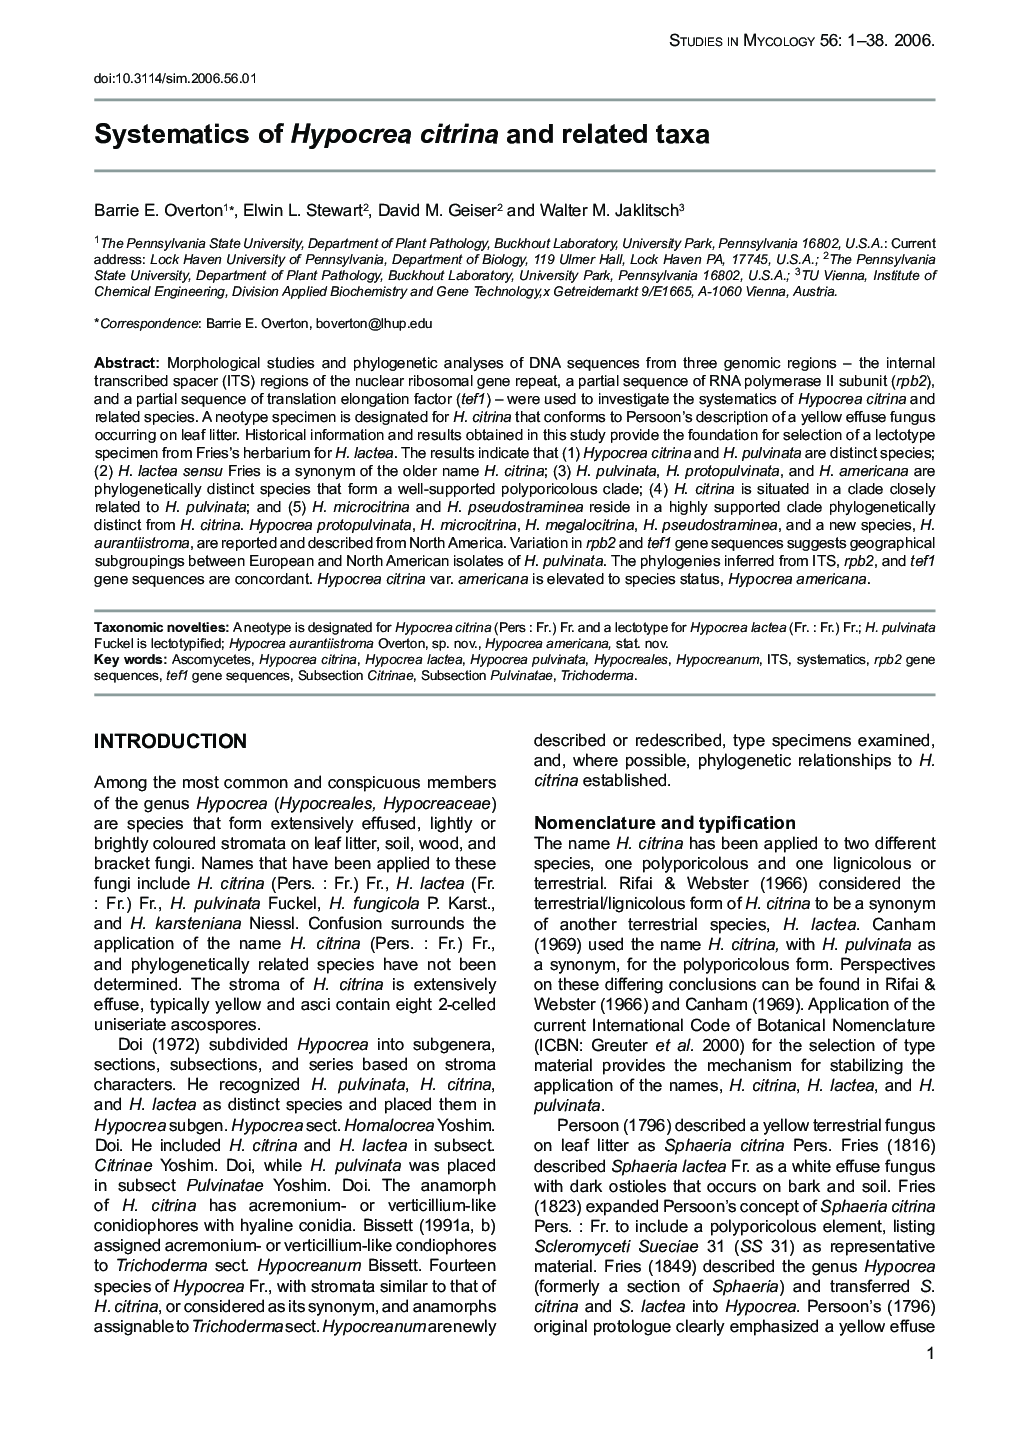 Systematics of Hypocrea citrina and related taxa 